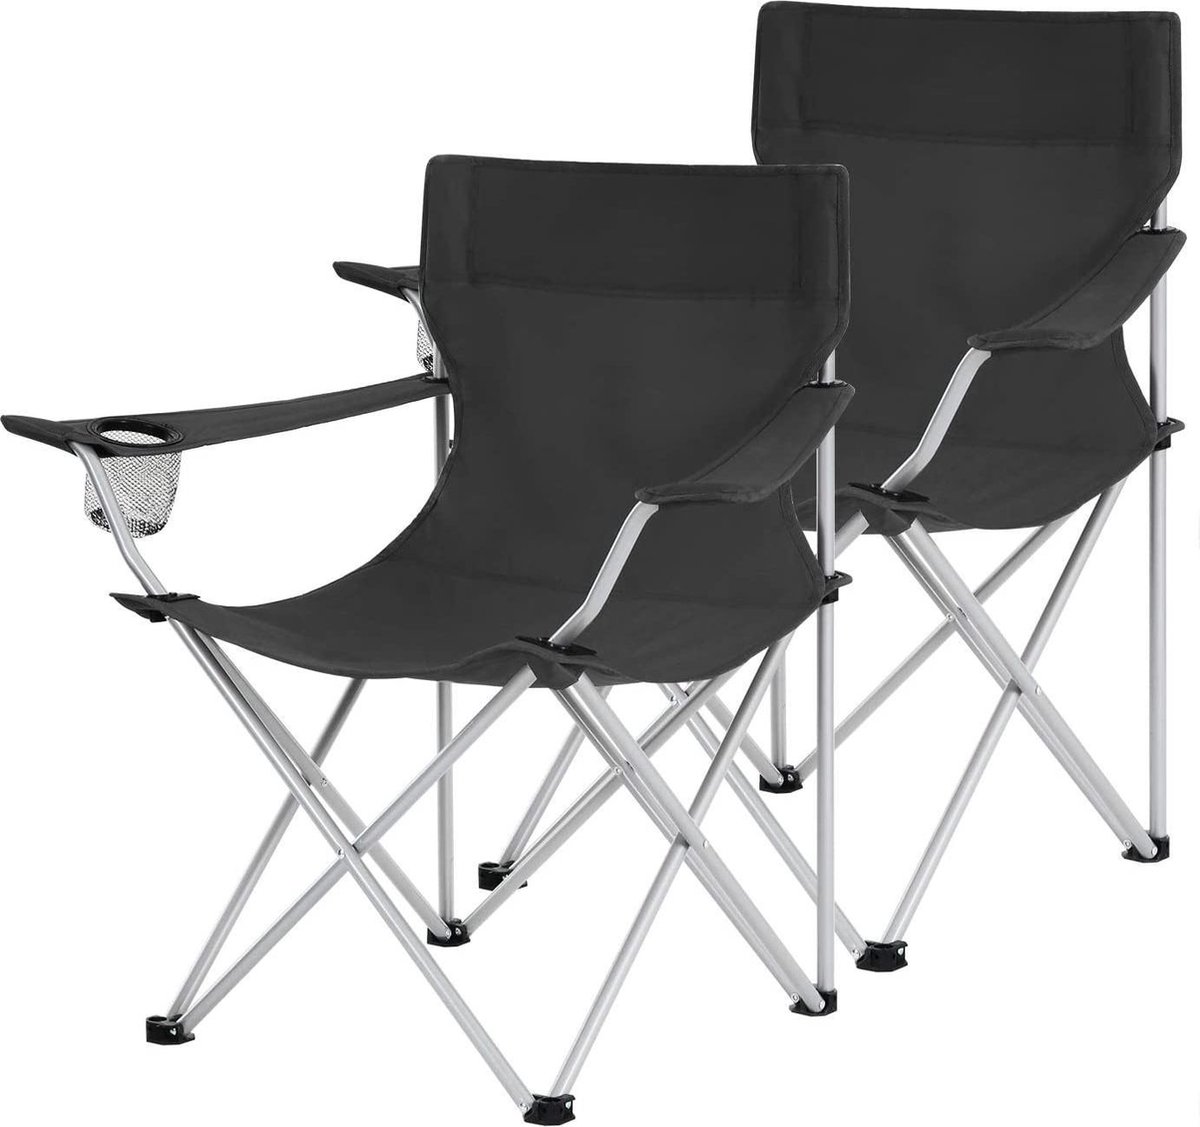 Set van 2 opklapbare campingstoelen, buitenstoelen met armleuningen en bekerhouder, stabiele structuur, Max. Capaciteit 120 kg, Zwart HMCB01BK